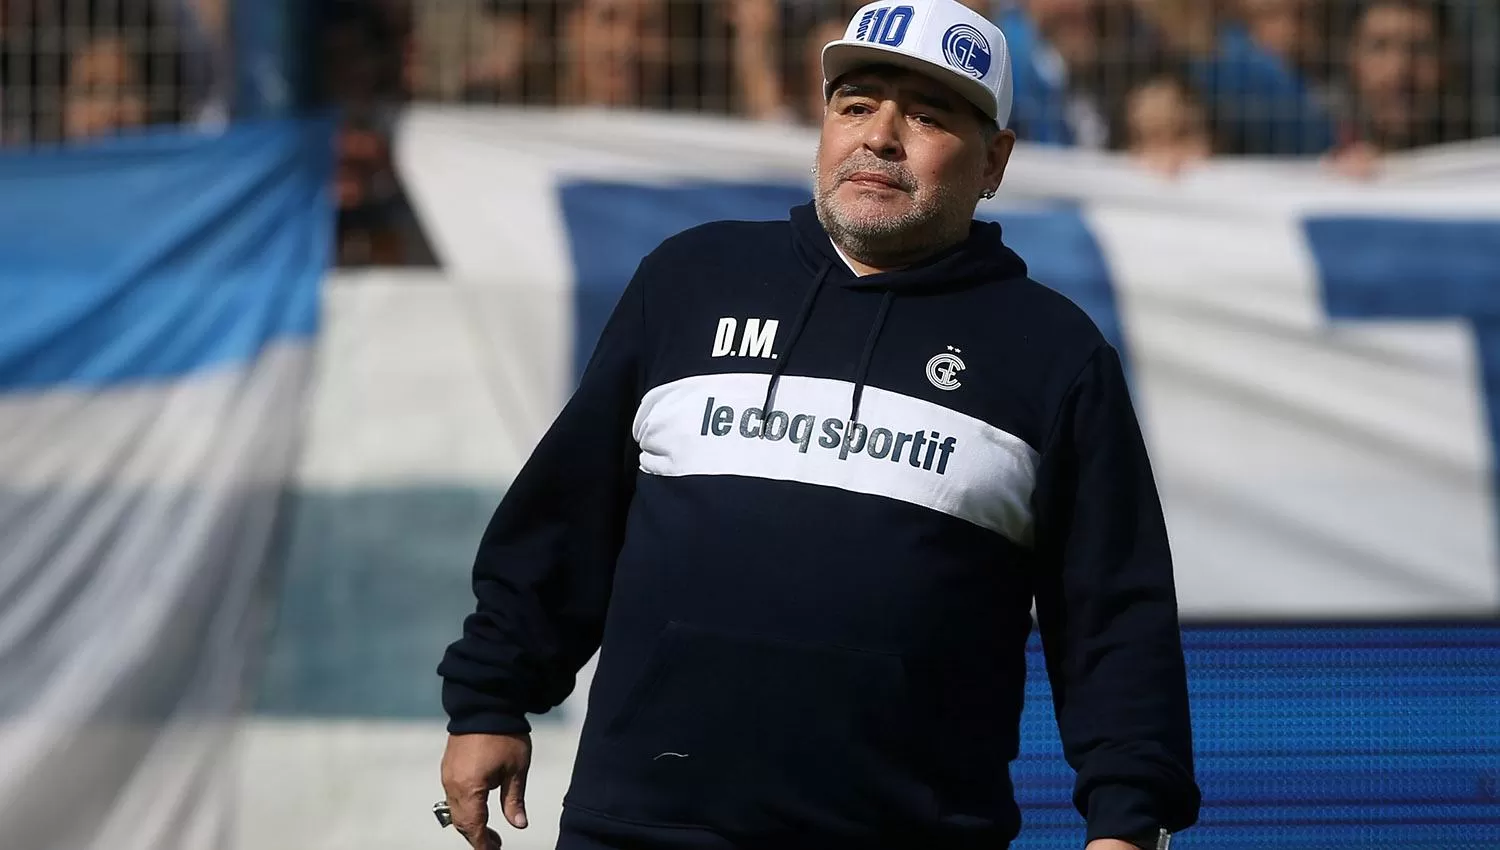 Infantino me decepcionó, dijo Maradona sobre el titular de la FIFA